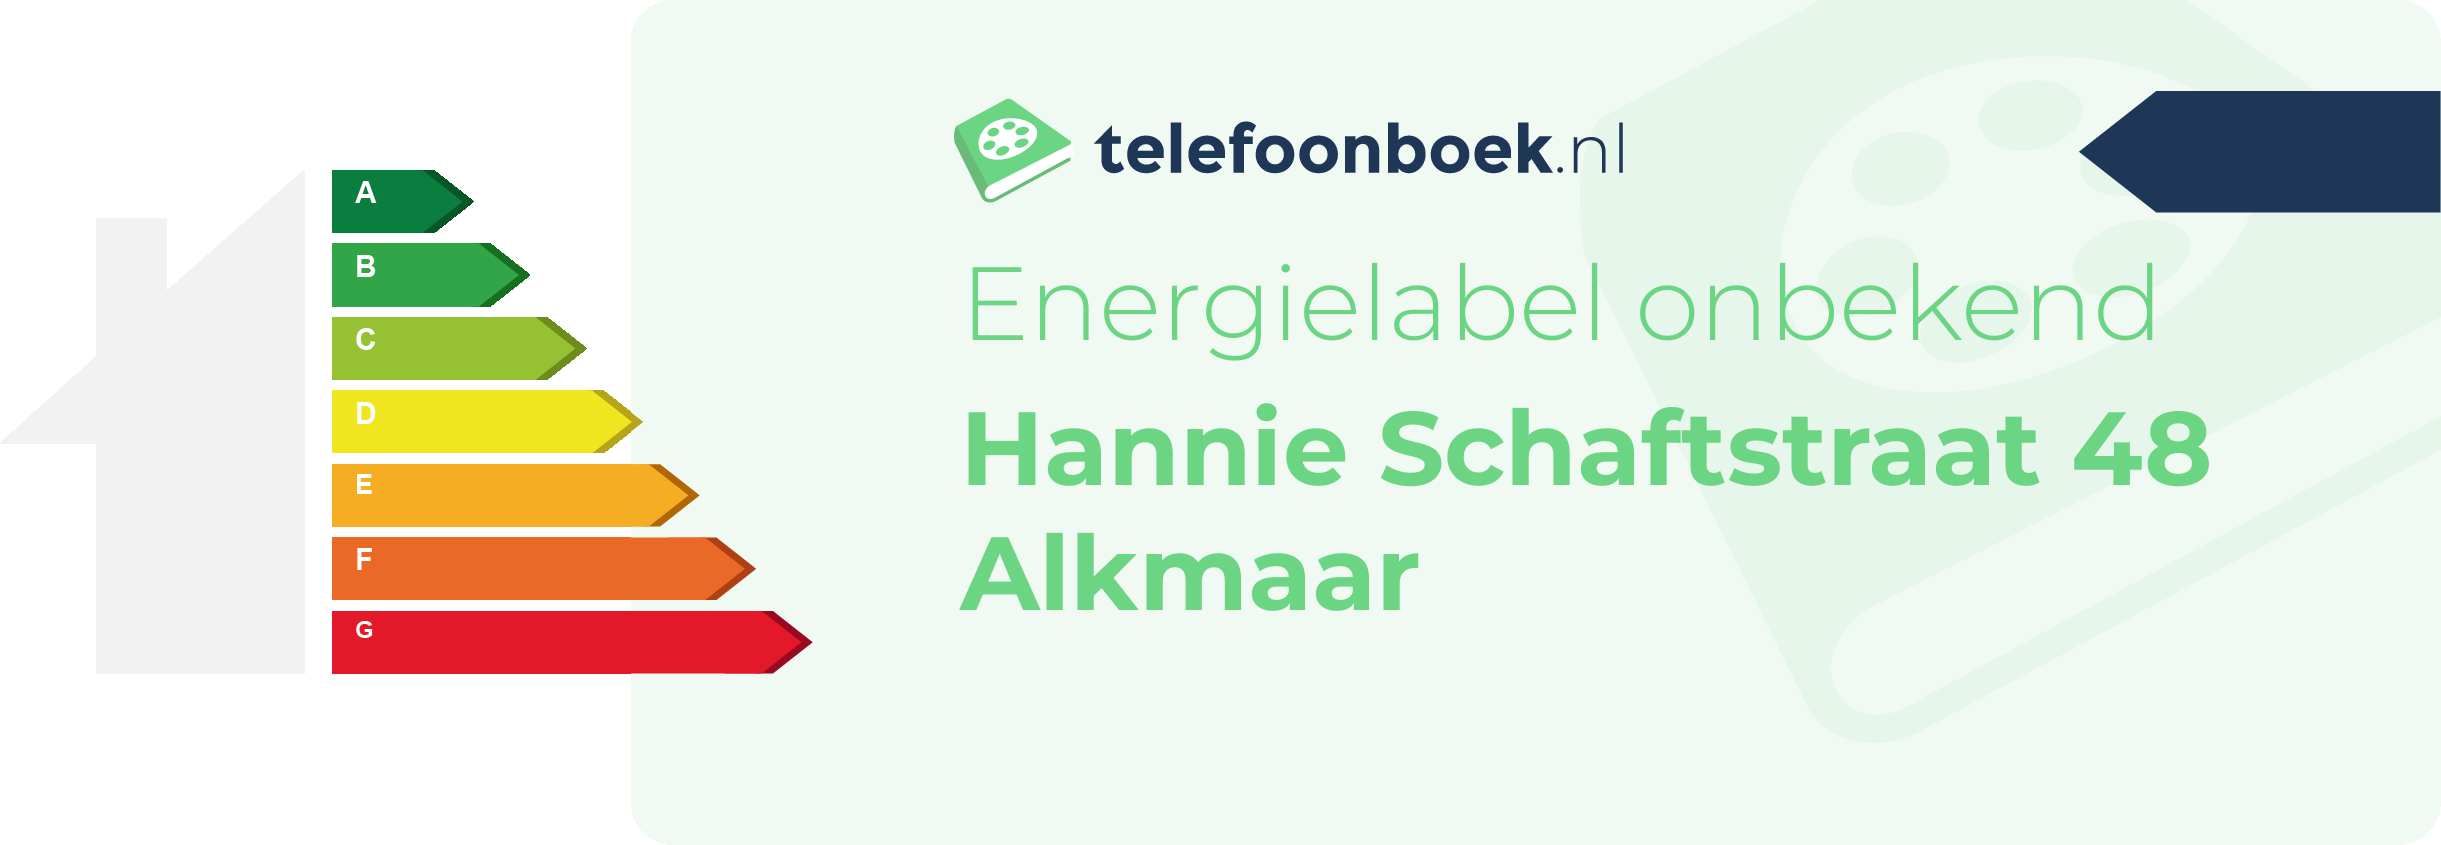 Energielabel Hannie Schaftstraat 48 Alkmaar